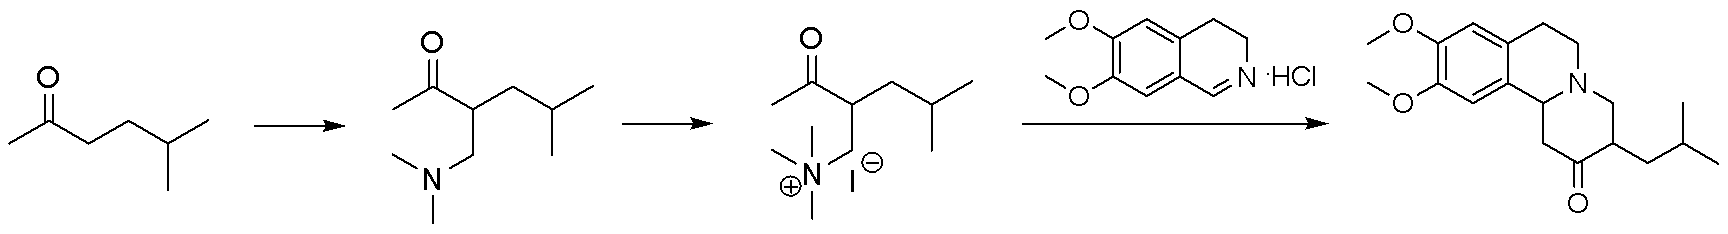 Method for synthesizing tetrabenazine